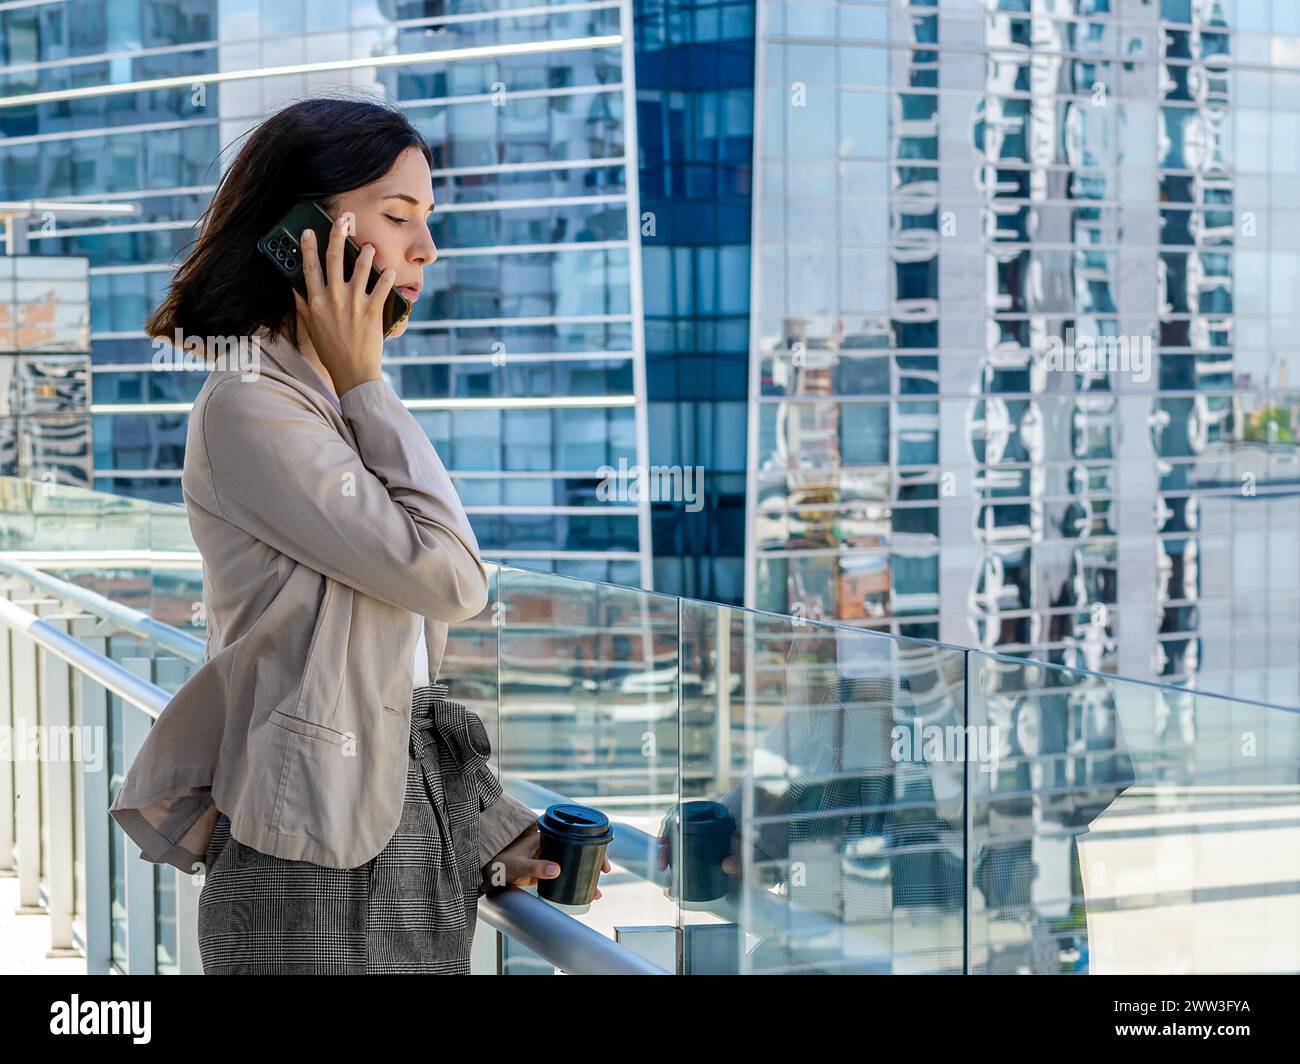 Une femme est debout sur un balcon, tenant une tasse de café en papier et parlant sur son téléphone portable pendant sa pause de bureau Banque D'Images